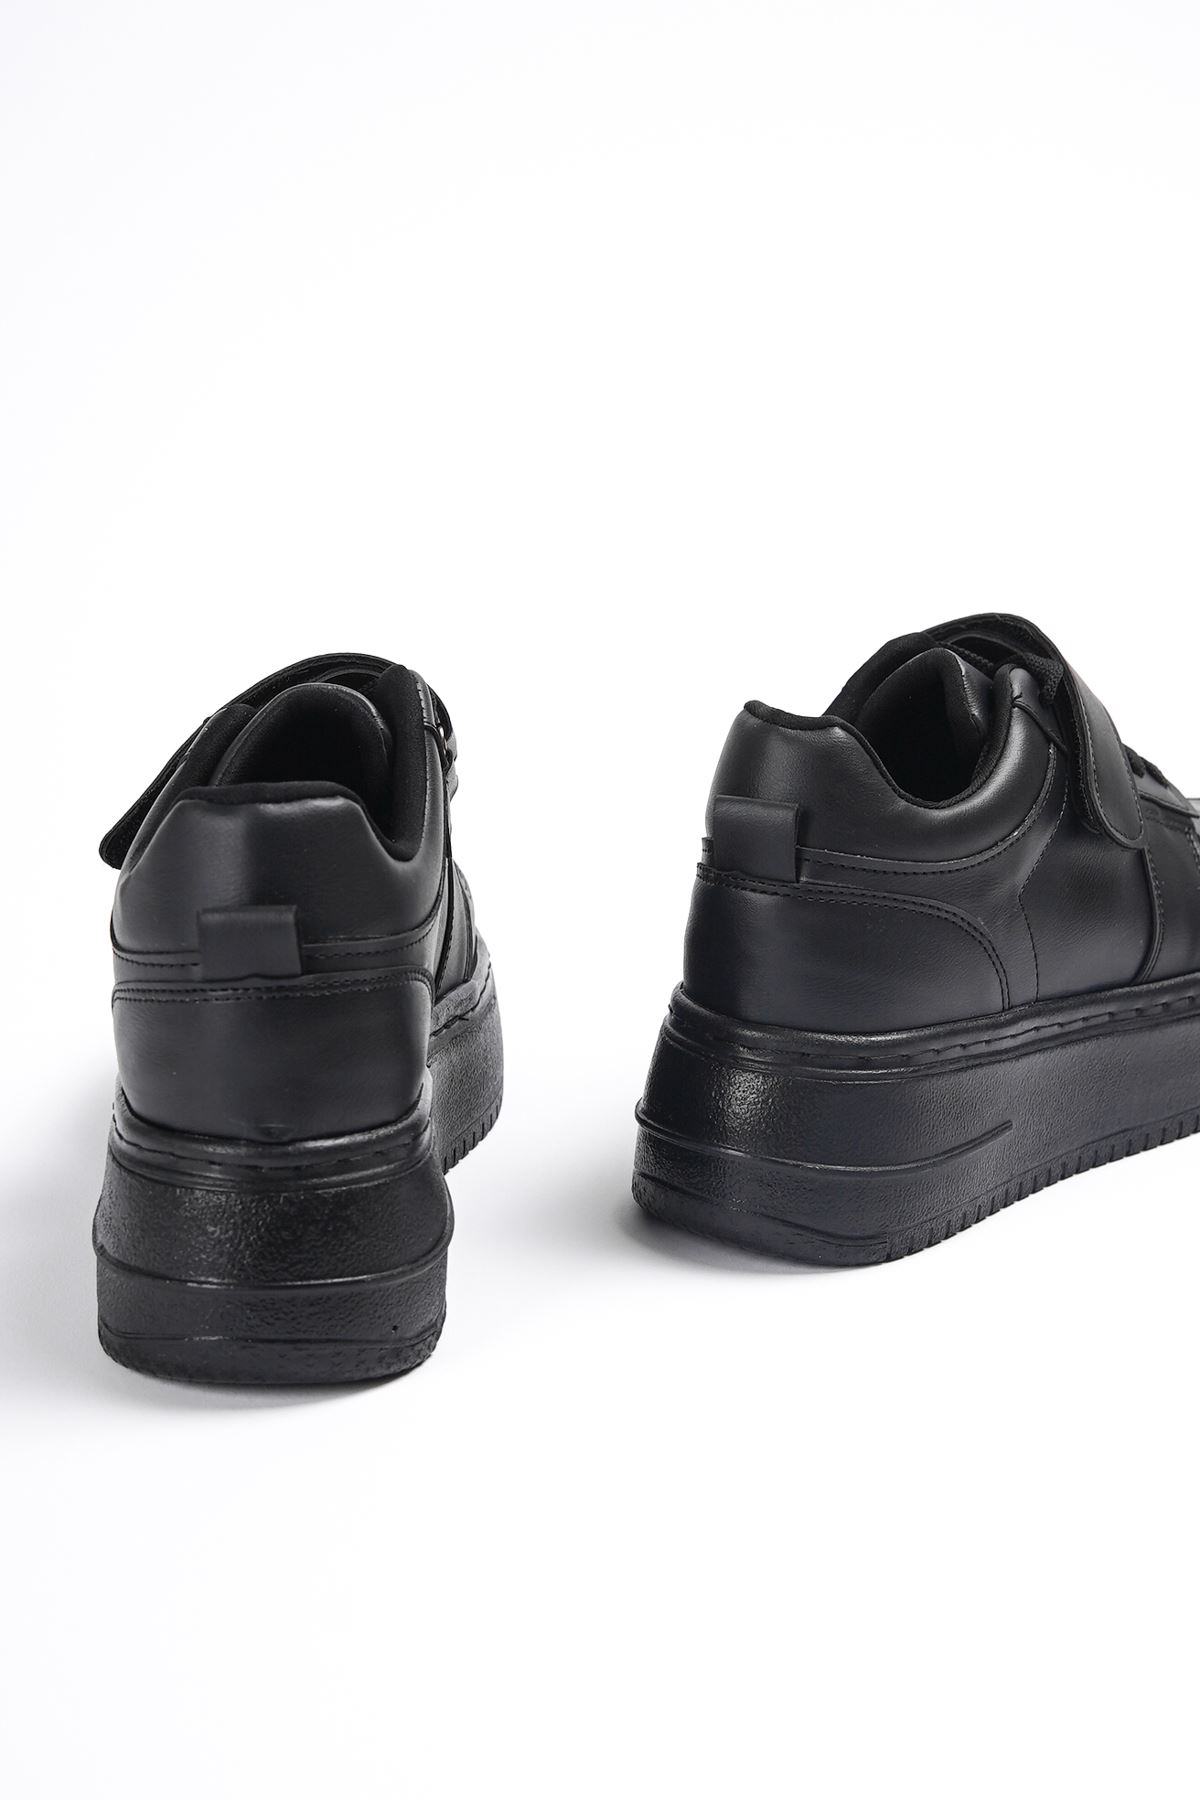 Kadın Toska Bağcıklı Spor Ayakkabı - siyah-deri